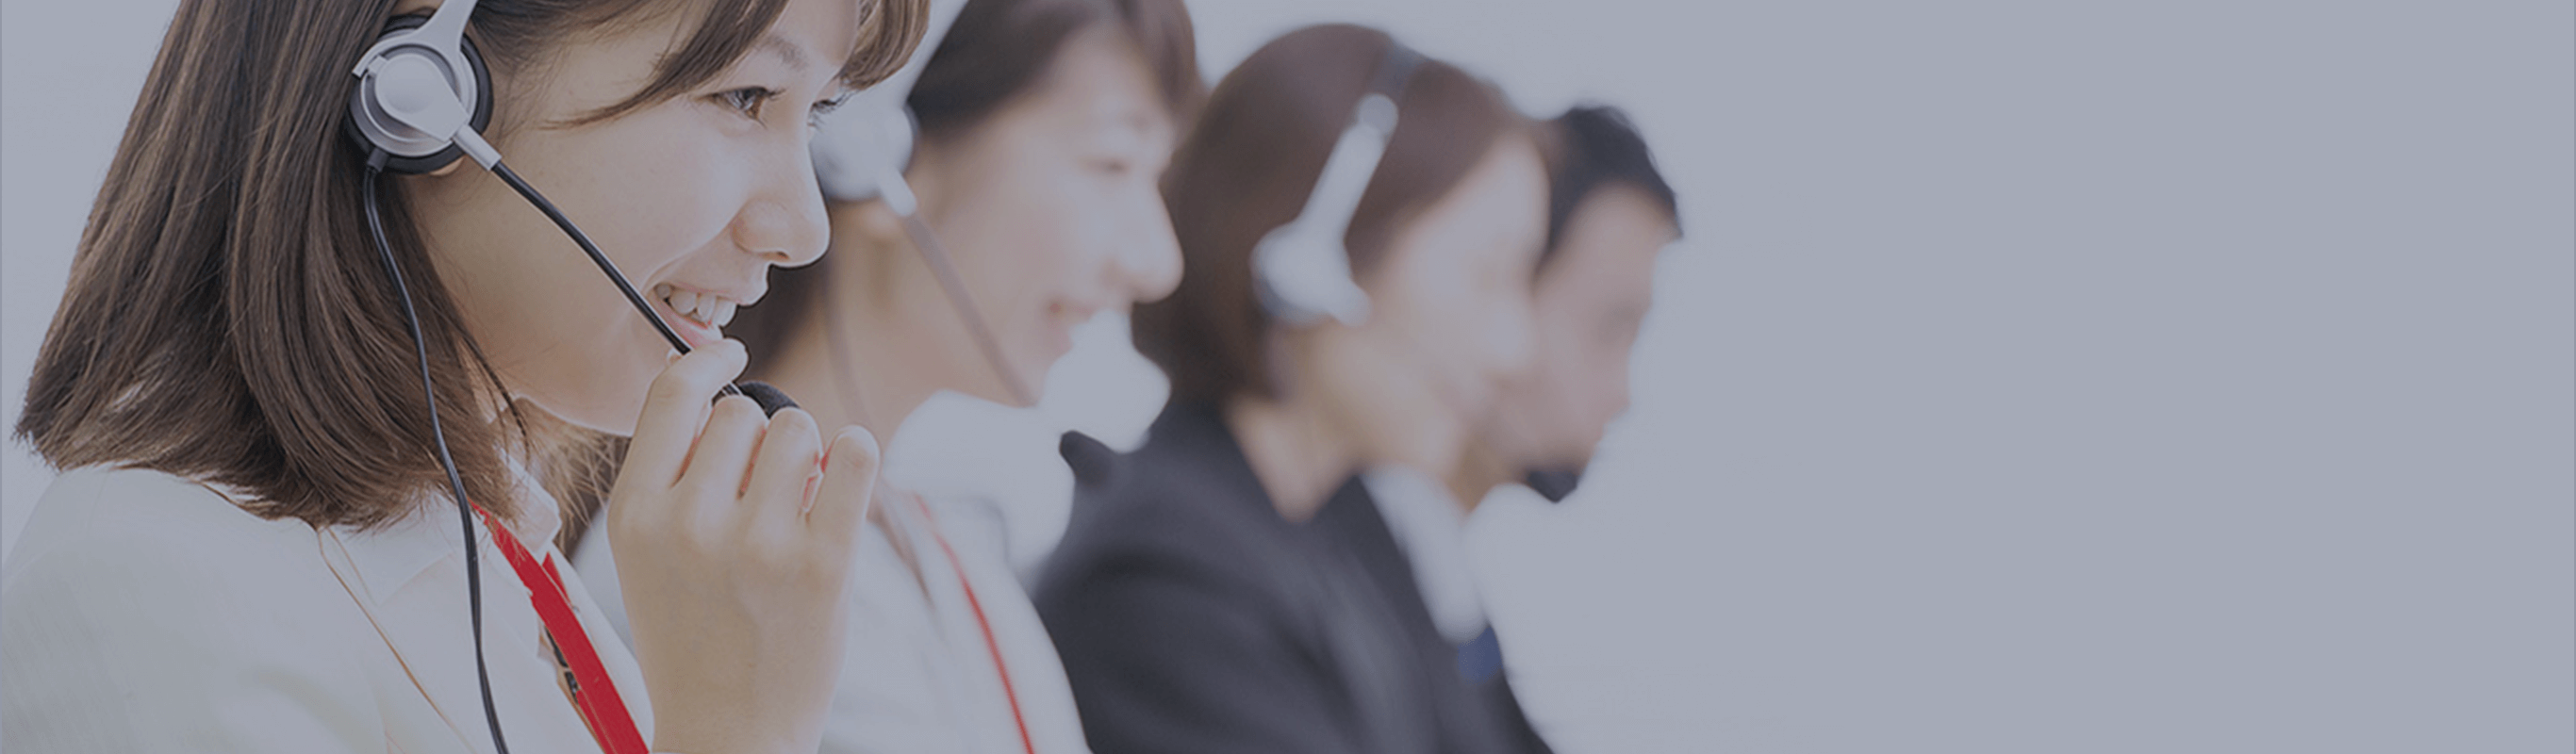 お問い合わせのご案内 | サービス&ソリューション | JEOL 日本電子株式会社